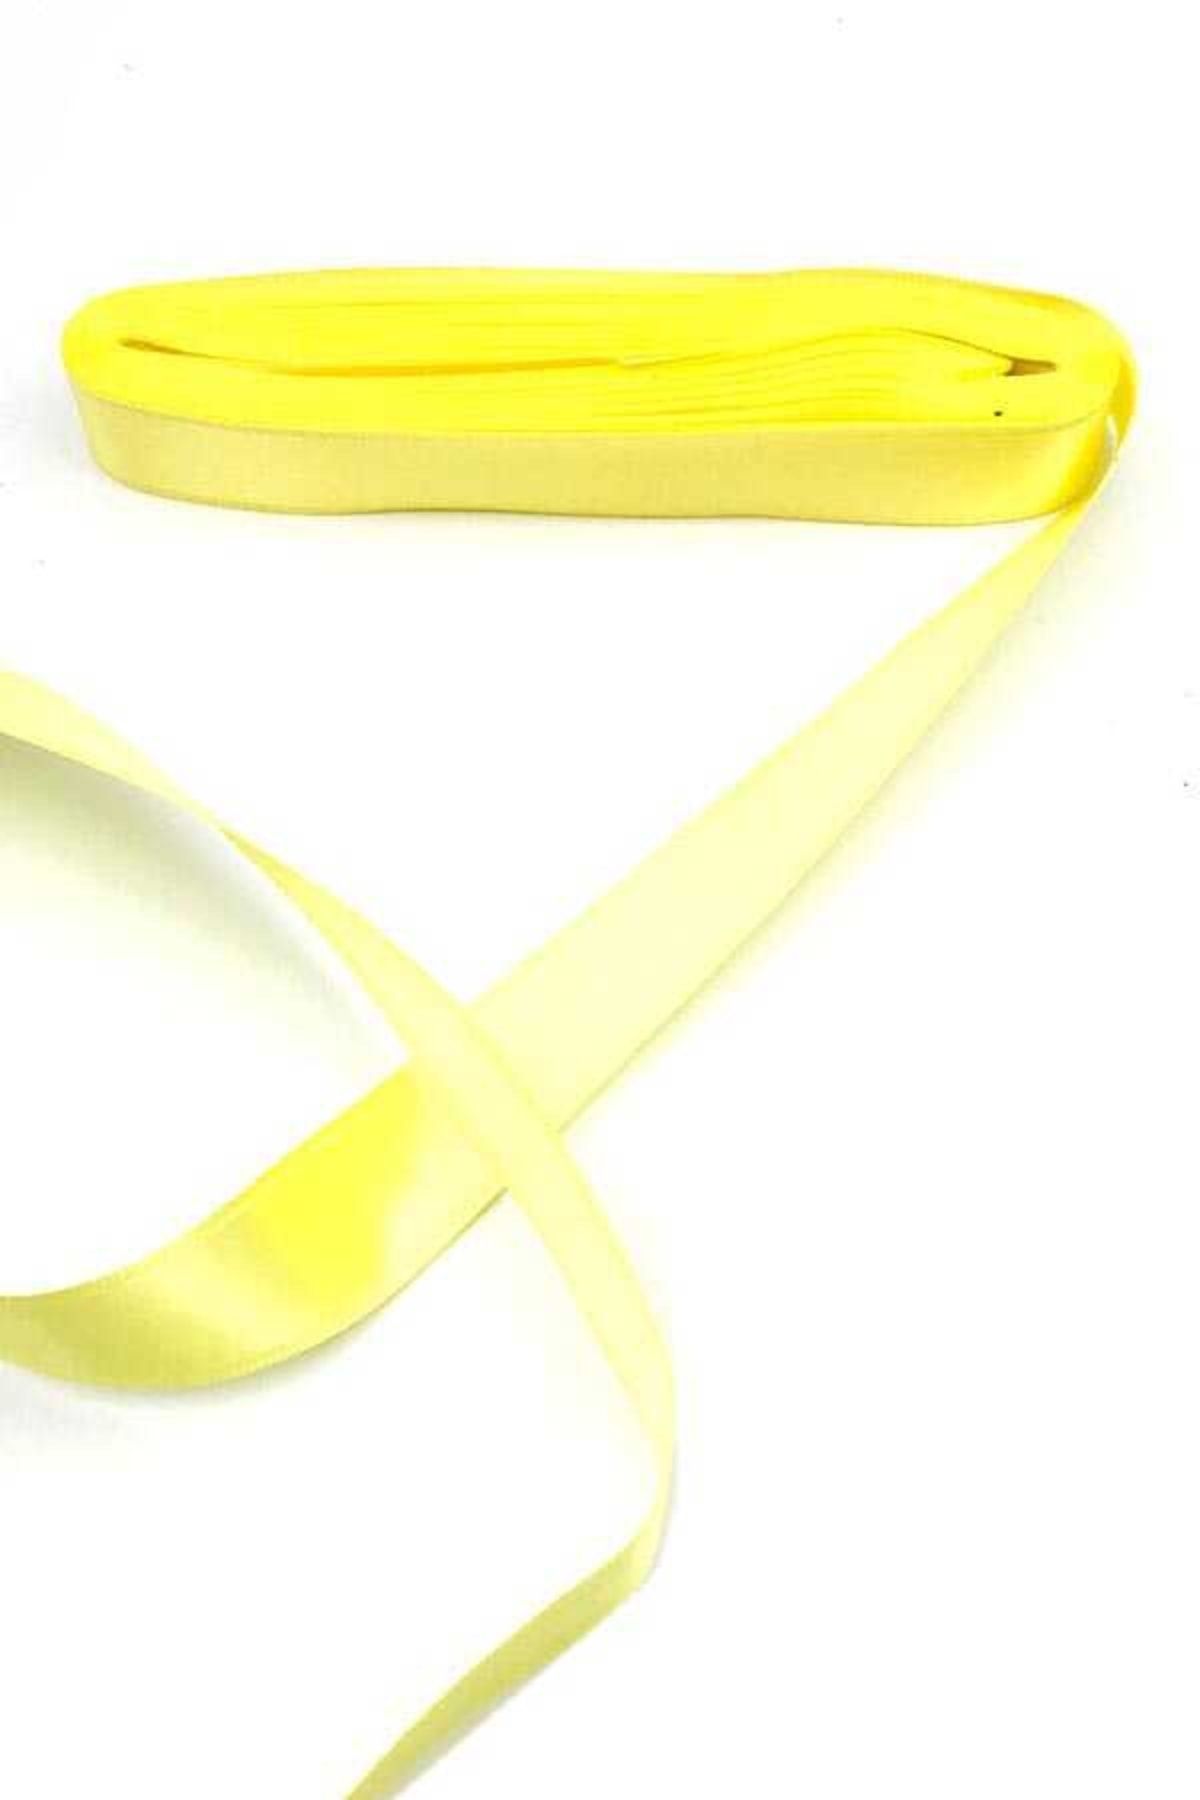 Aker Hediyelik Sarı Saten Kurdela 3cm 10m Sarı Saten Kurdele Şerit – 3cm Saten Kurdela